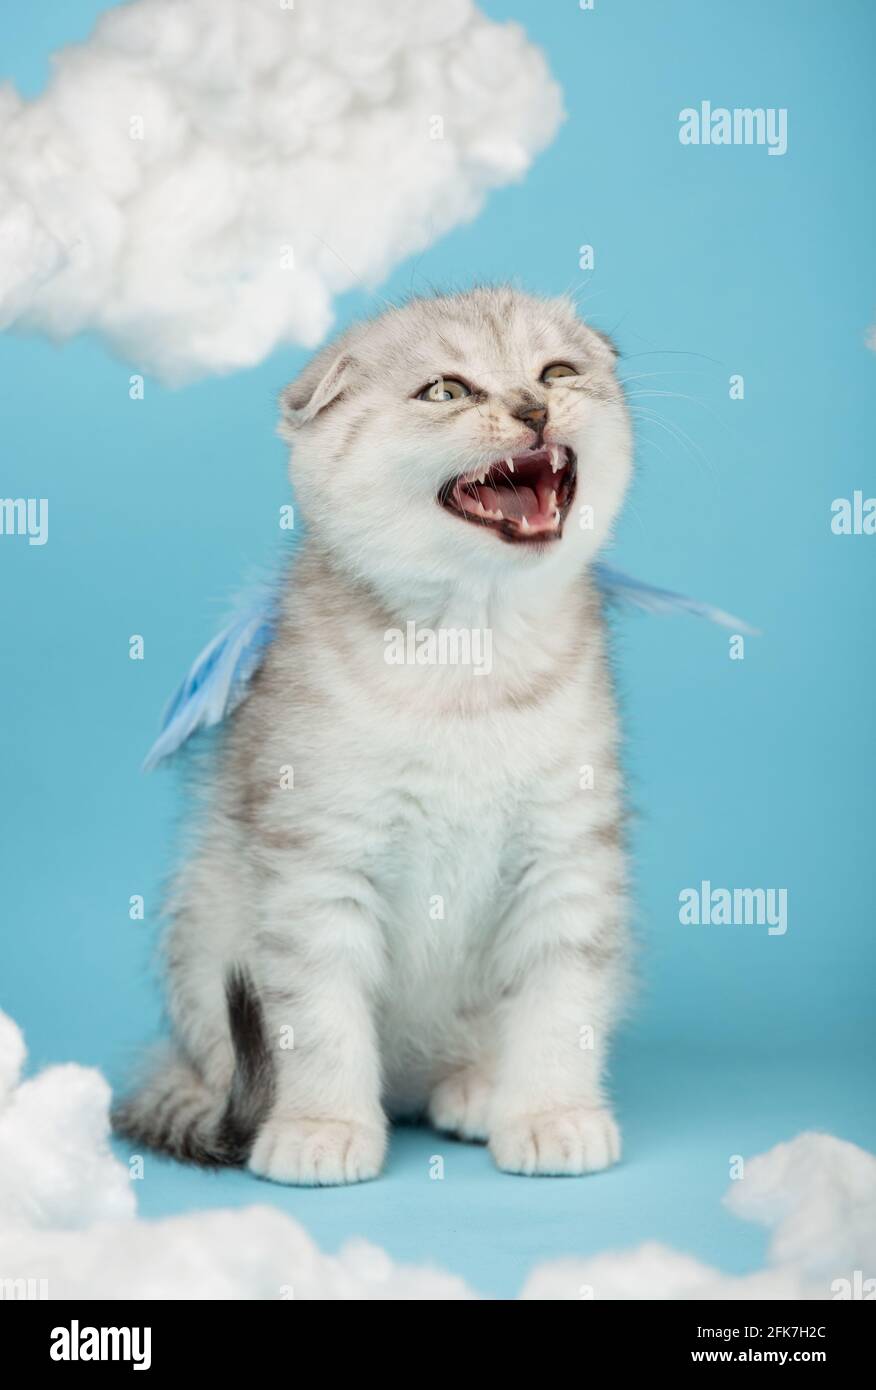 El gatito escocés vestido con alas azules se ciñe fuerte entre las nubes de algodón. El color crema de corte a rayas agresivo se asienta con la boca abierta sobre una espalda azul Foto de stock